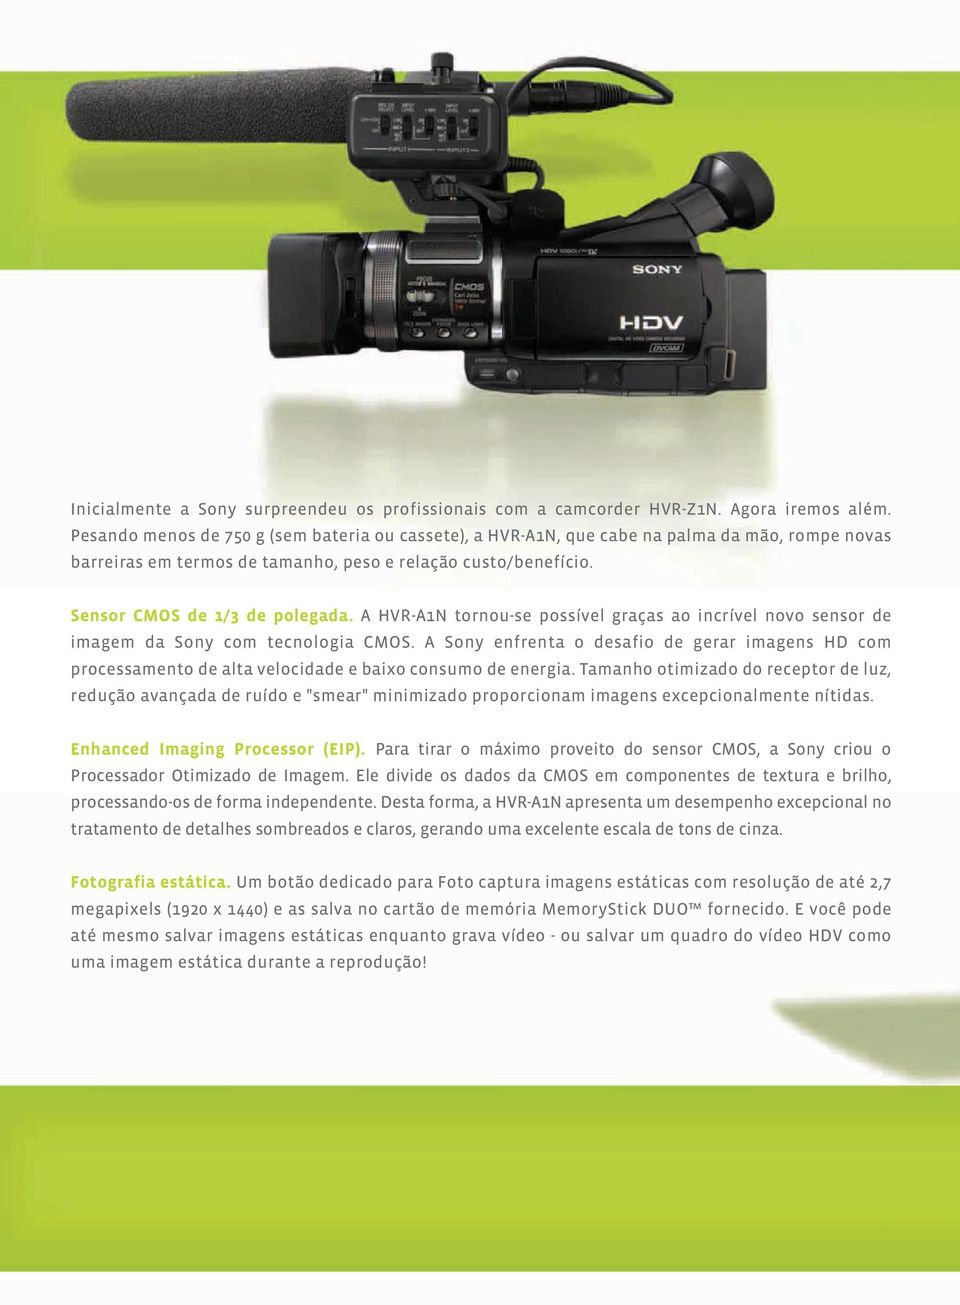 A HVR-A1N tornou-se possível graças ao incrível novo sensor de imagem da Sony com tecnologia CMOS.